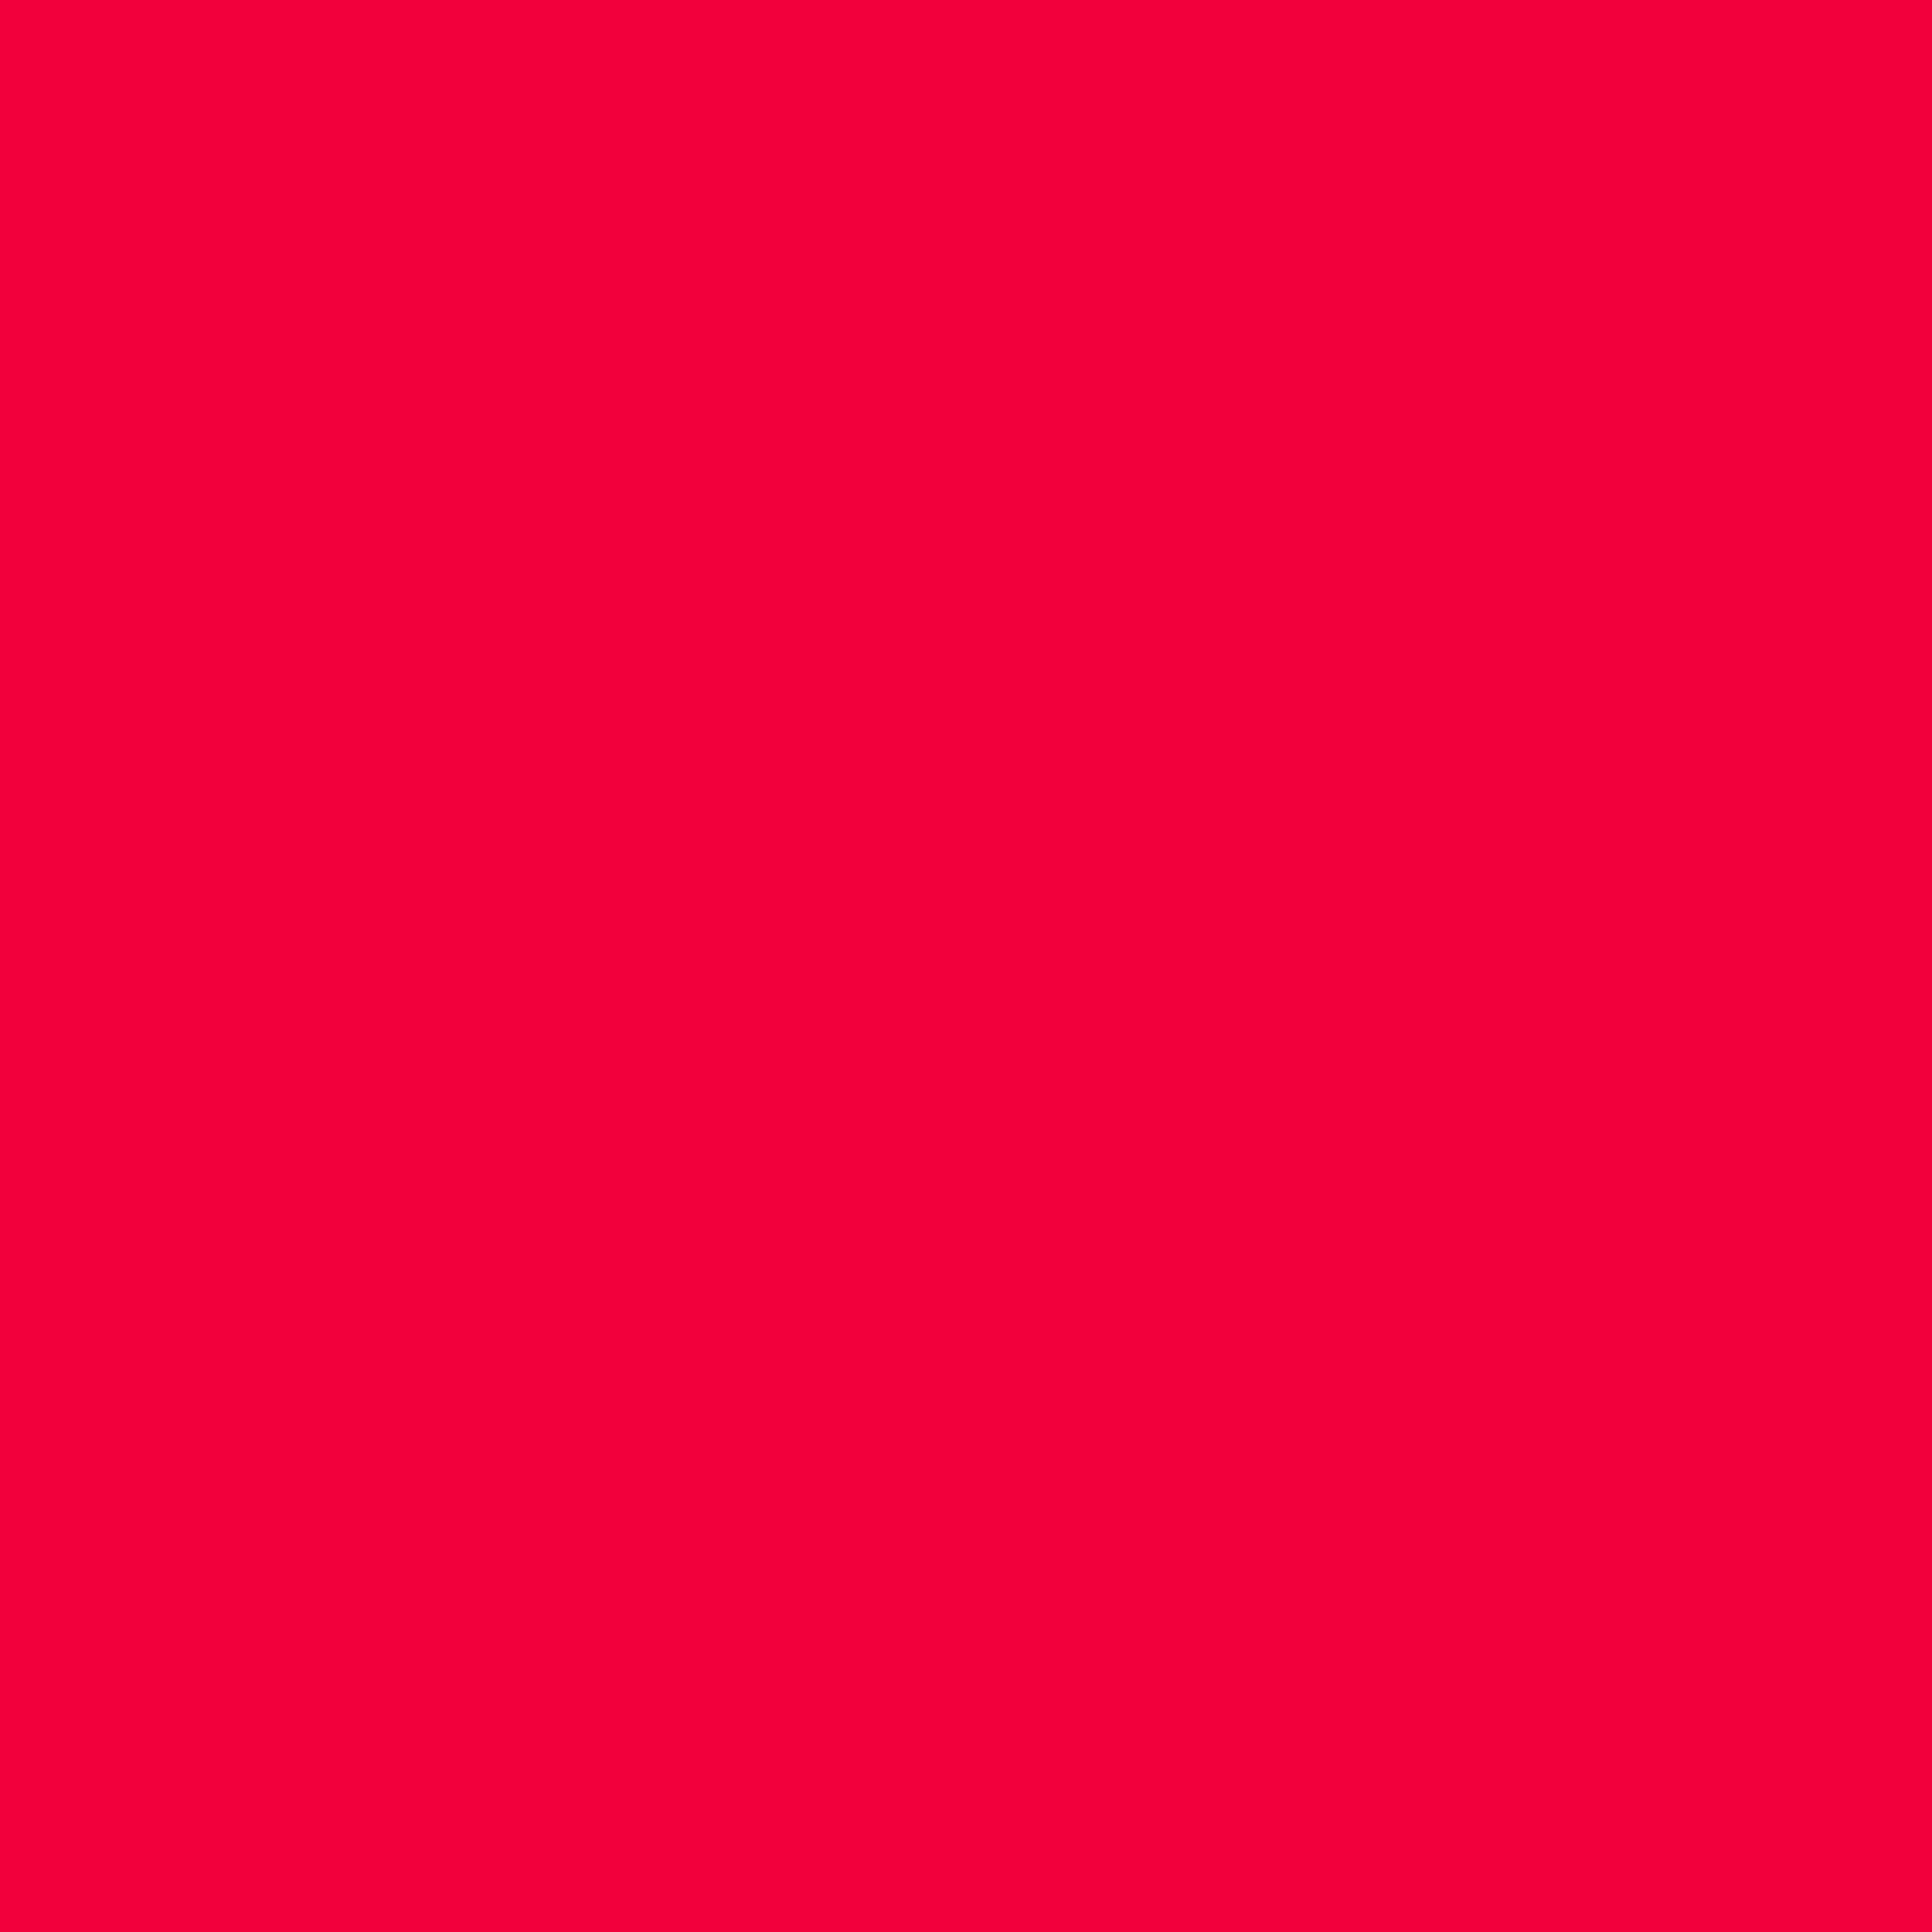 Nền đỏ munsell 2048x2048 - Để tìm kiếm một hình nền đơn giản nhưng vẫn đầy sức sống và quyền uy, nền đỏ munsell 2048x2048 là lựa chọn hoàn hảo. Với kích thước đủ lớn, hình ảnh này sẽ mang lại sự độc đáo và quyền lực cho thiết bị của bạn. Hãy thử sức với nền đỏ munsell 2048x2048 để trở thành người dùng độc đáo và nổi bật.